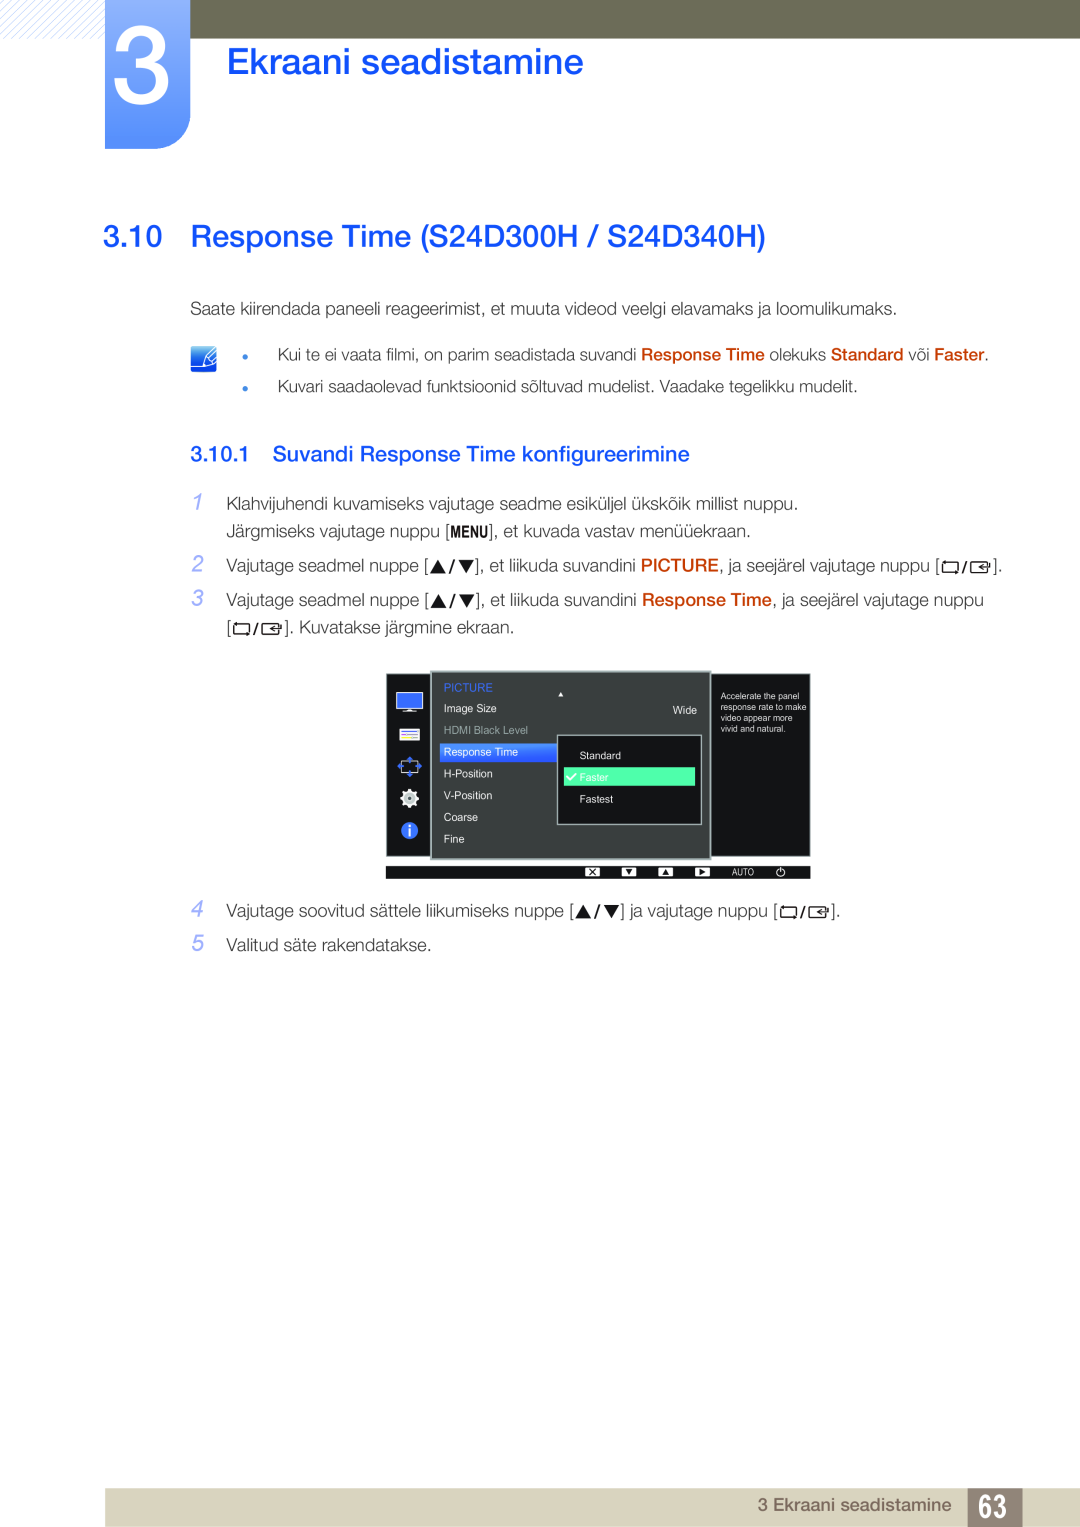 Samsung LS22D300NY/EN Response Time S24D300H / S24D340H, Suvandi Response Time konfigureerimine, Ekraani seadistamine 